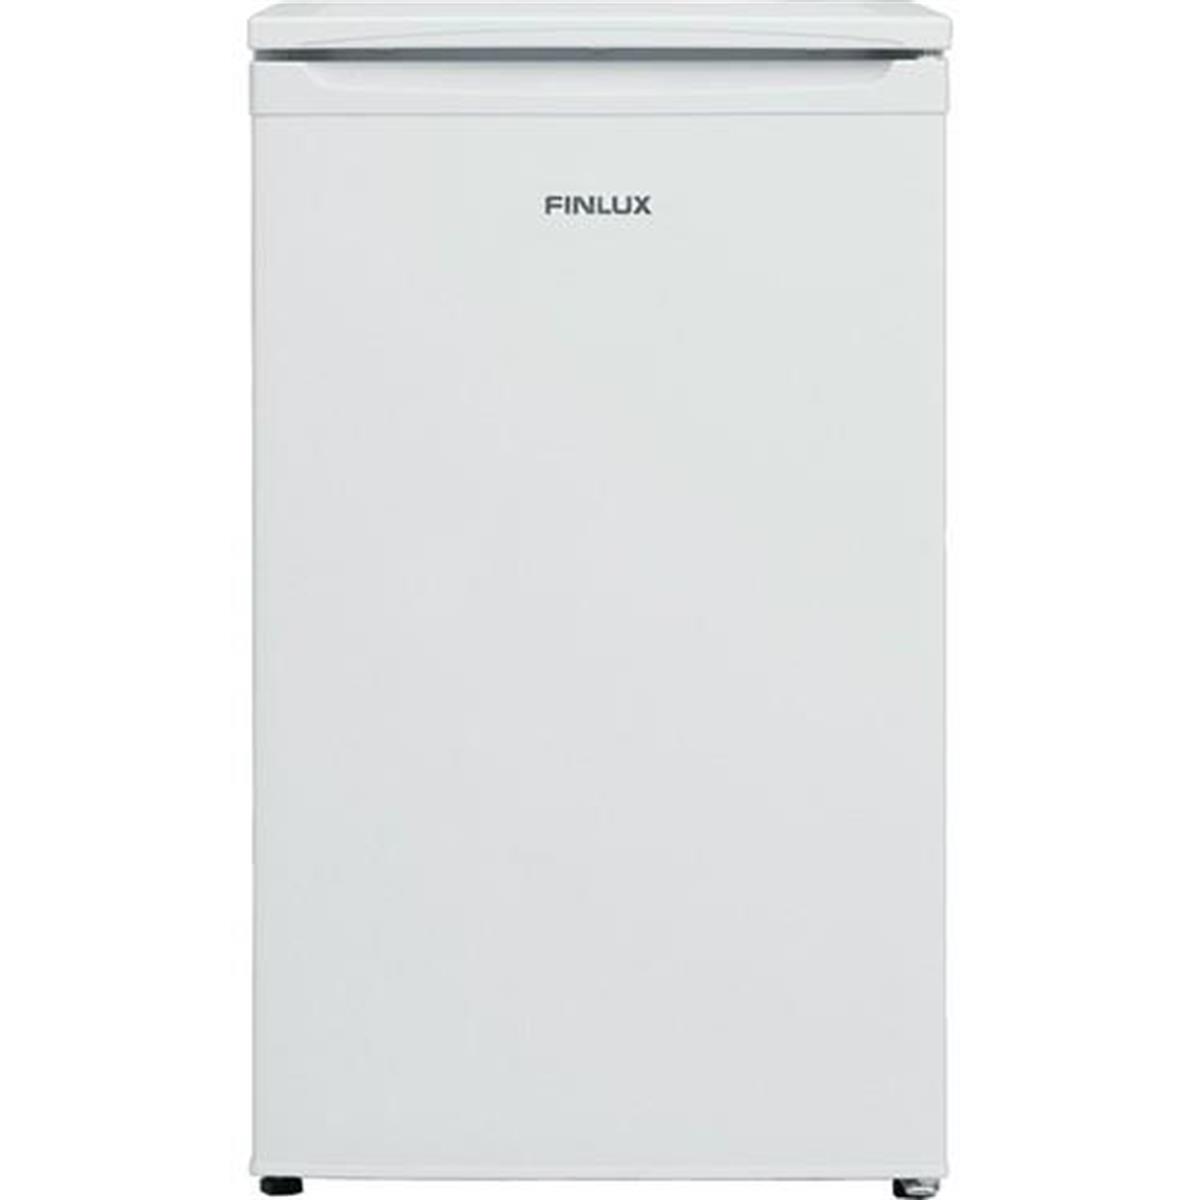 Finlux FN 920 BT Büro Tipi Mini Buzdolabı